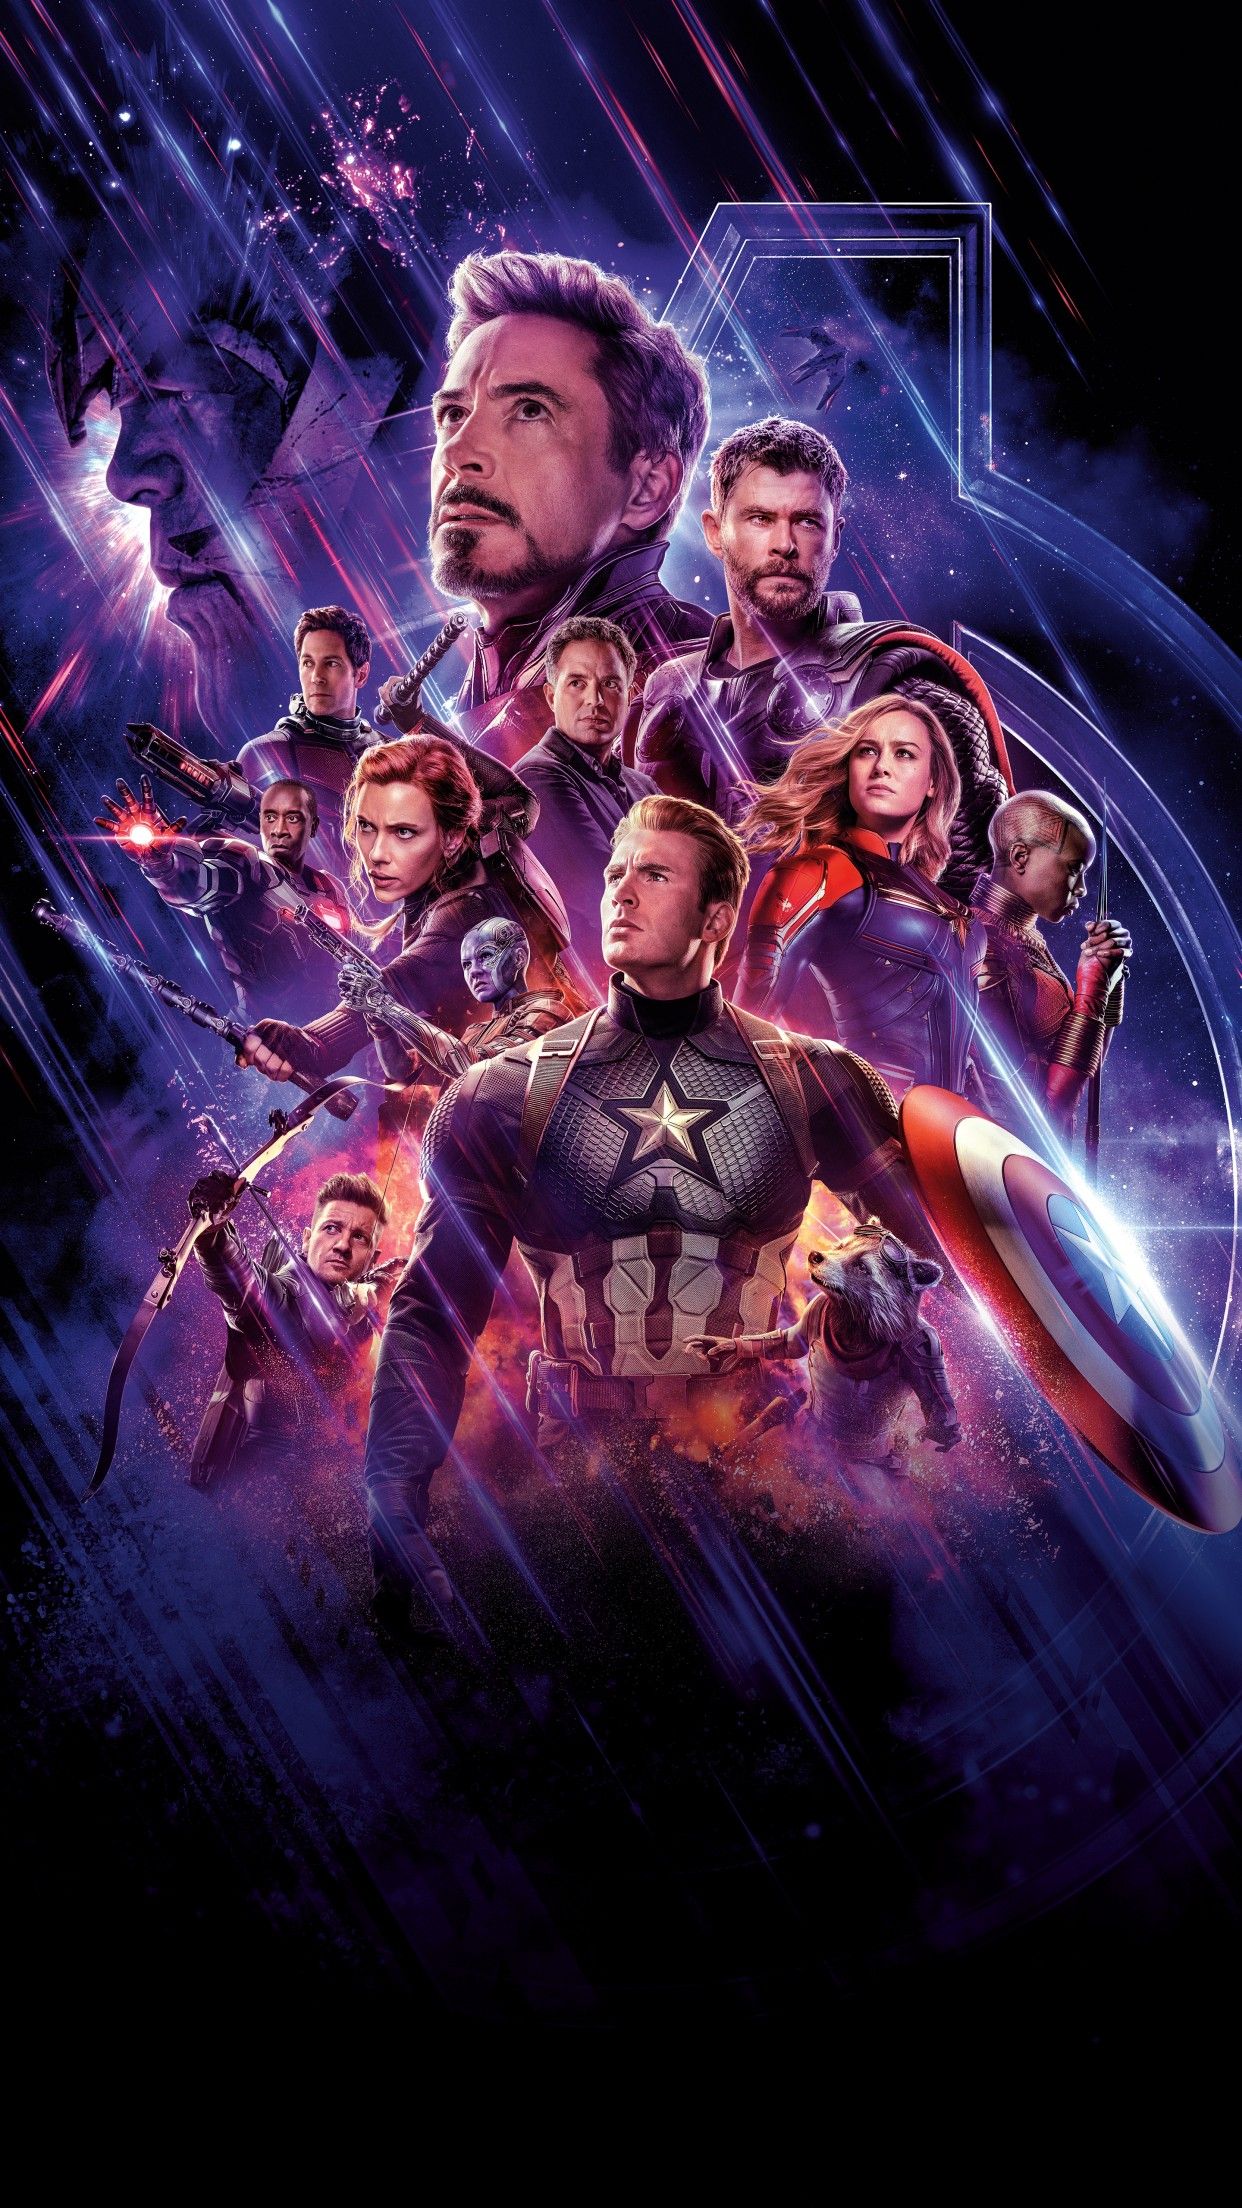 Avengers: Endgame Wallpaper 4K, Marvel Superheroes, Marvel Comics, 5K, Movies